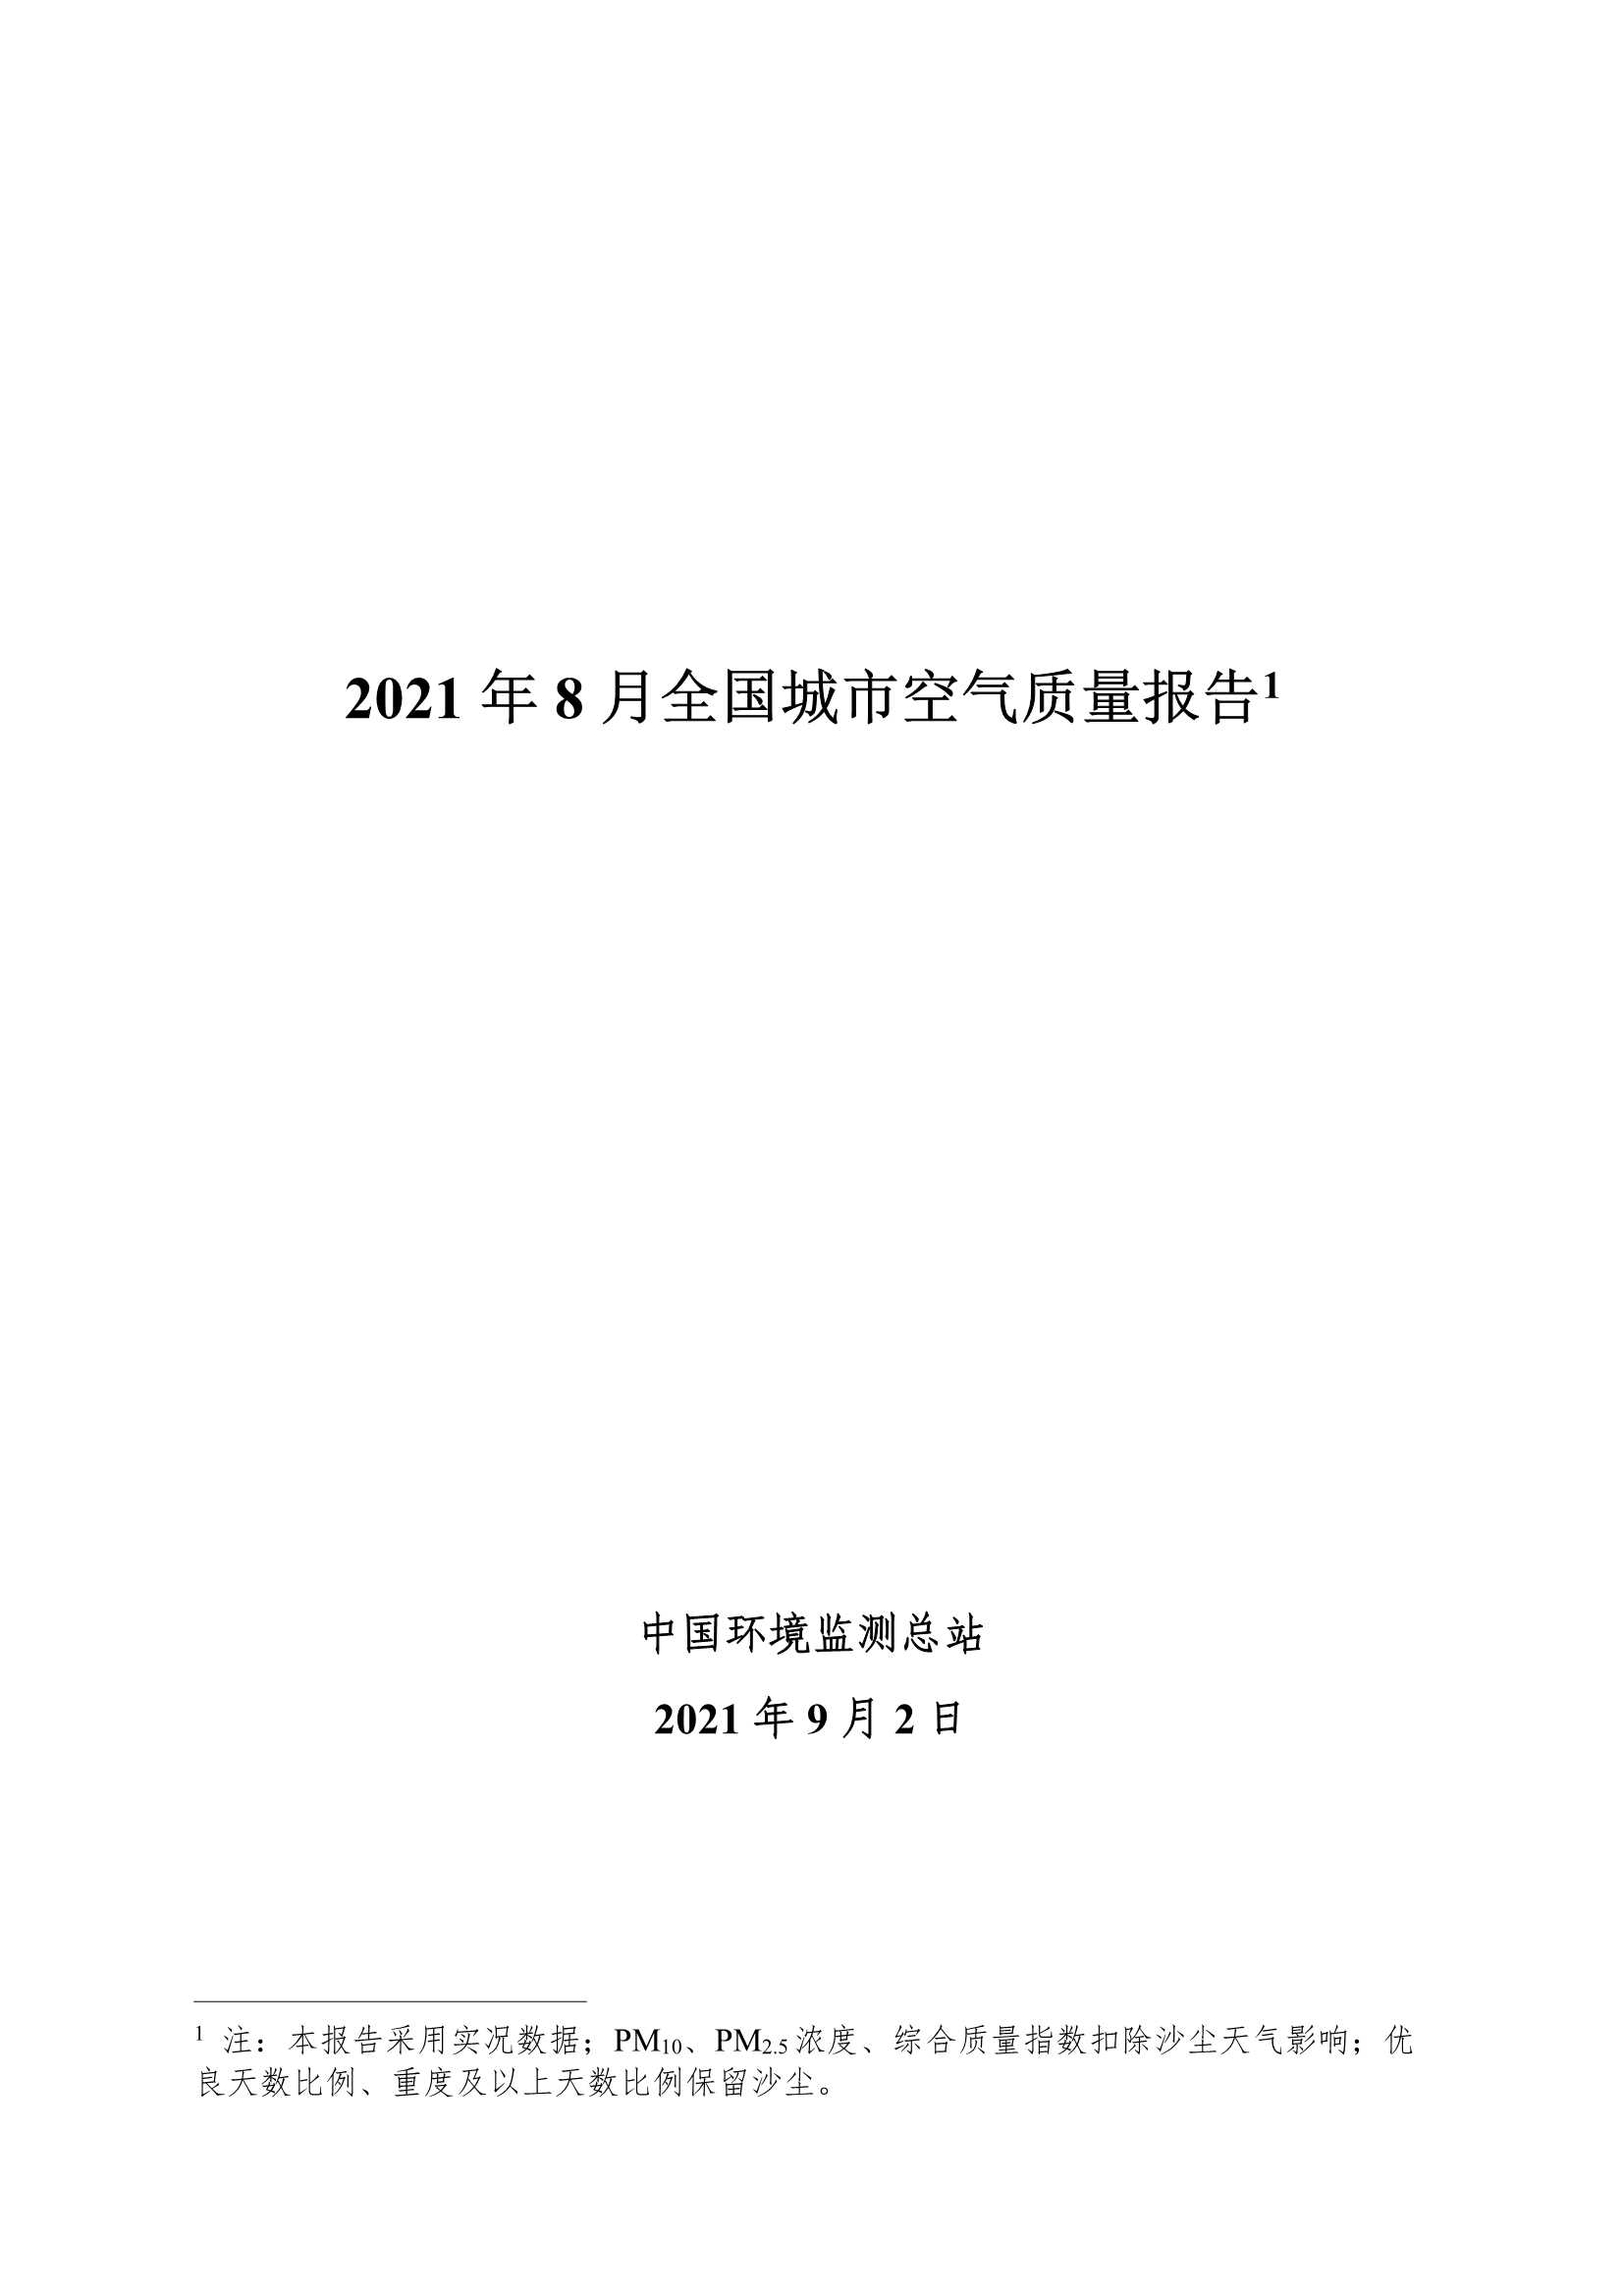 中华人民共和国生态环境部-2021 年 8 月全国城市空气质量报告-2021.10-31页